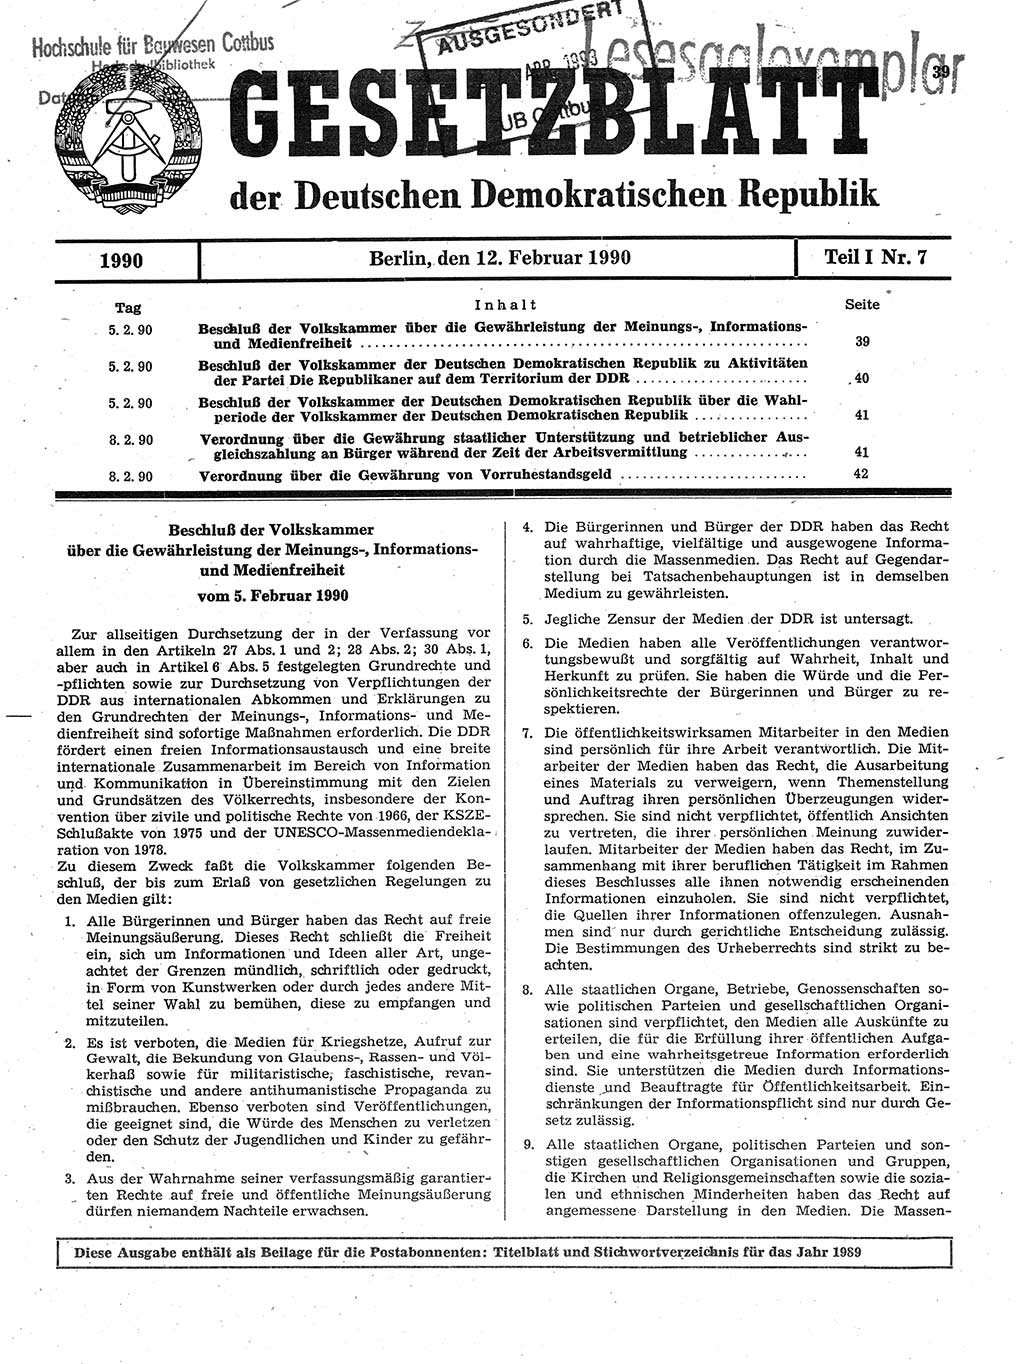 Gesetzblatt (GBl.) der Deutschen Demokratischen Republik (DDR) Teil Ⅰ 1990, Seite 39 (GBl. DDR Ⅰ 1990, S. 39)